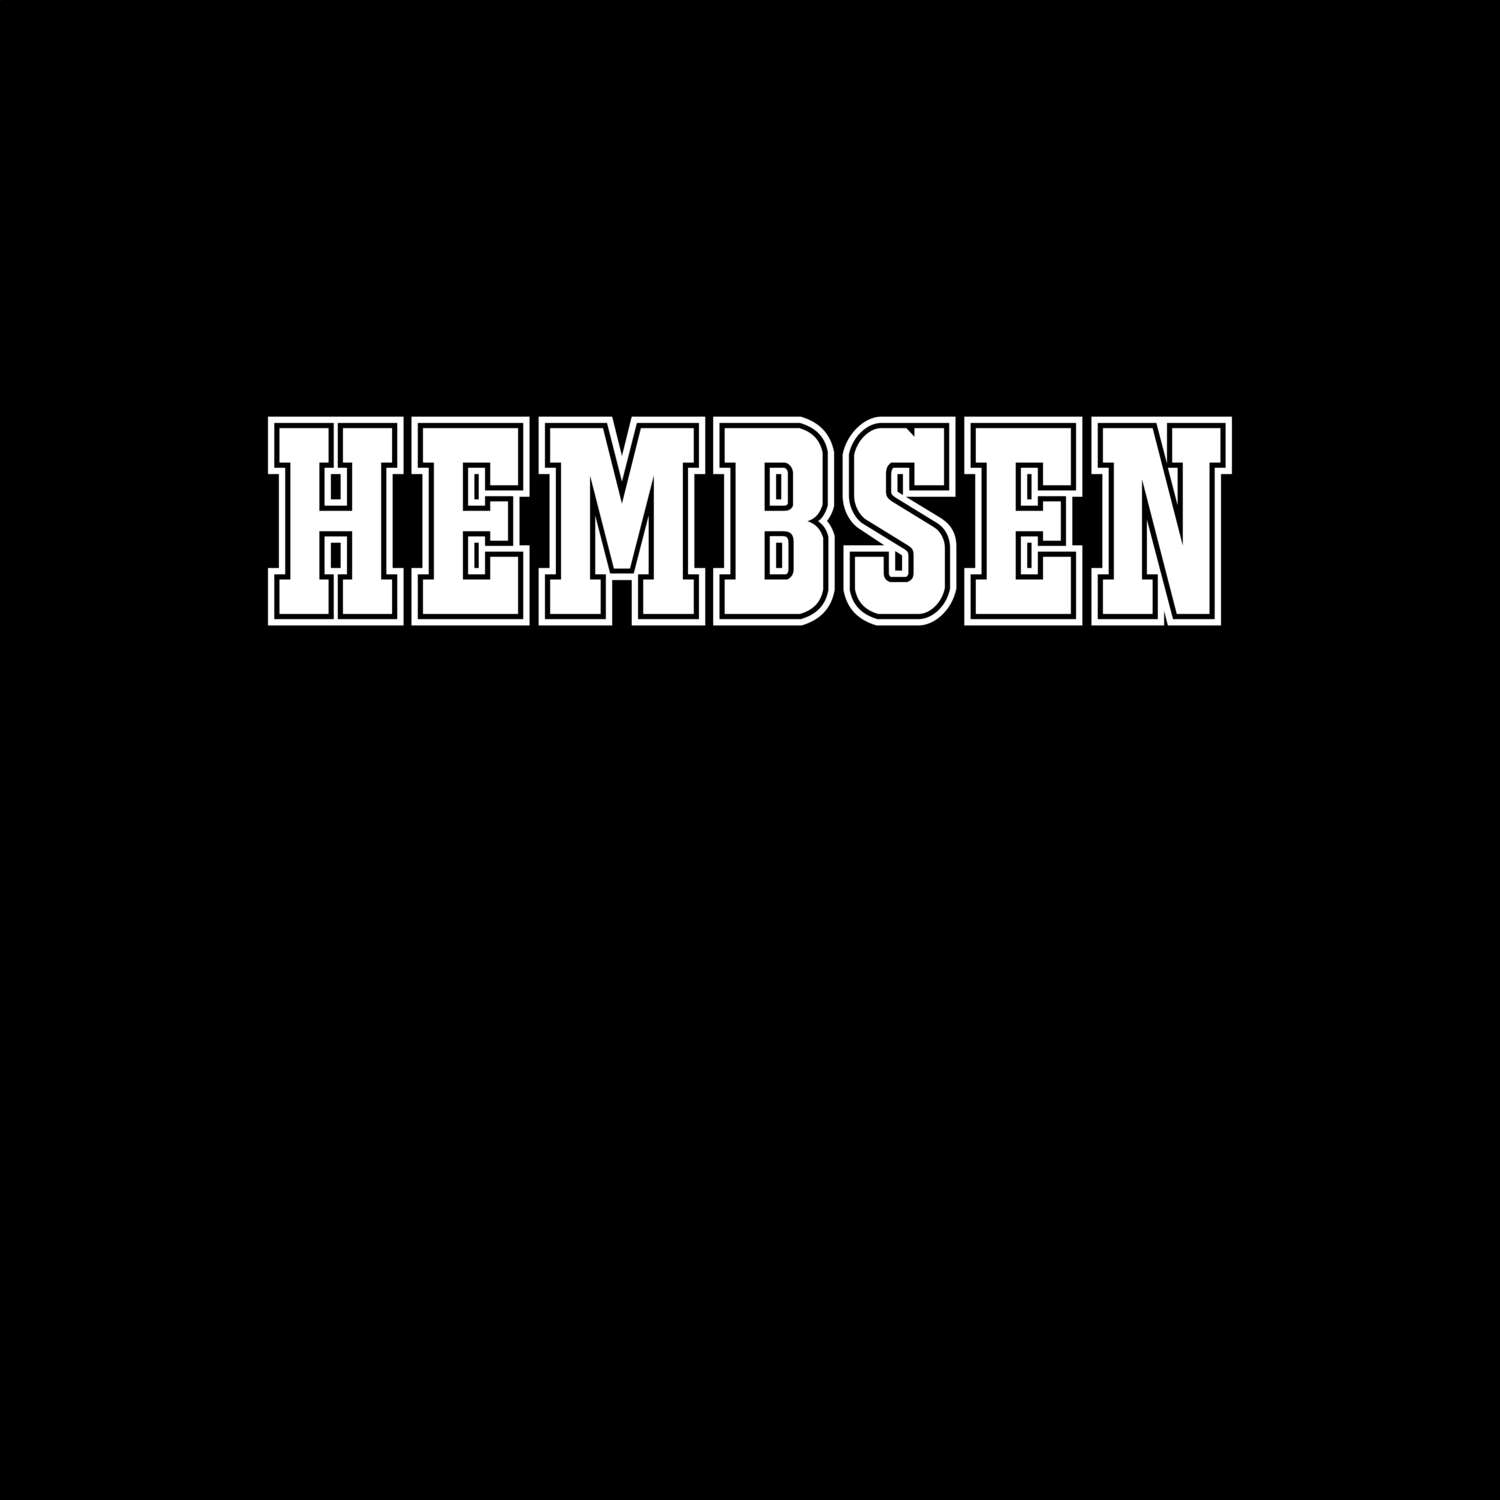 Hembsen T-Shirt »Classic«